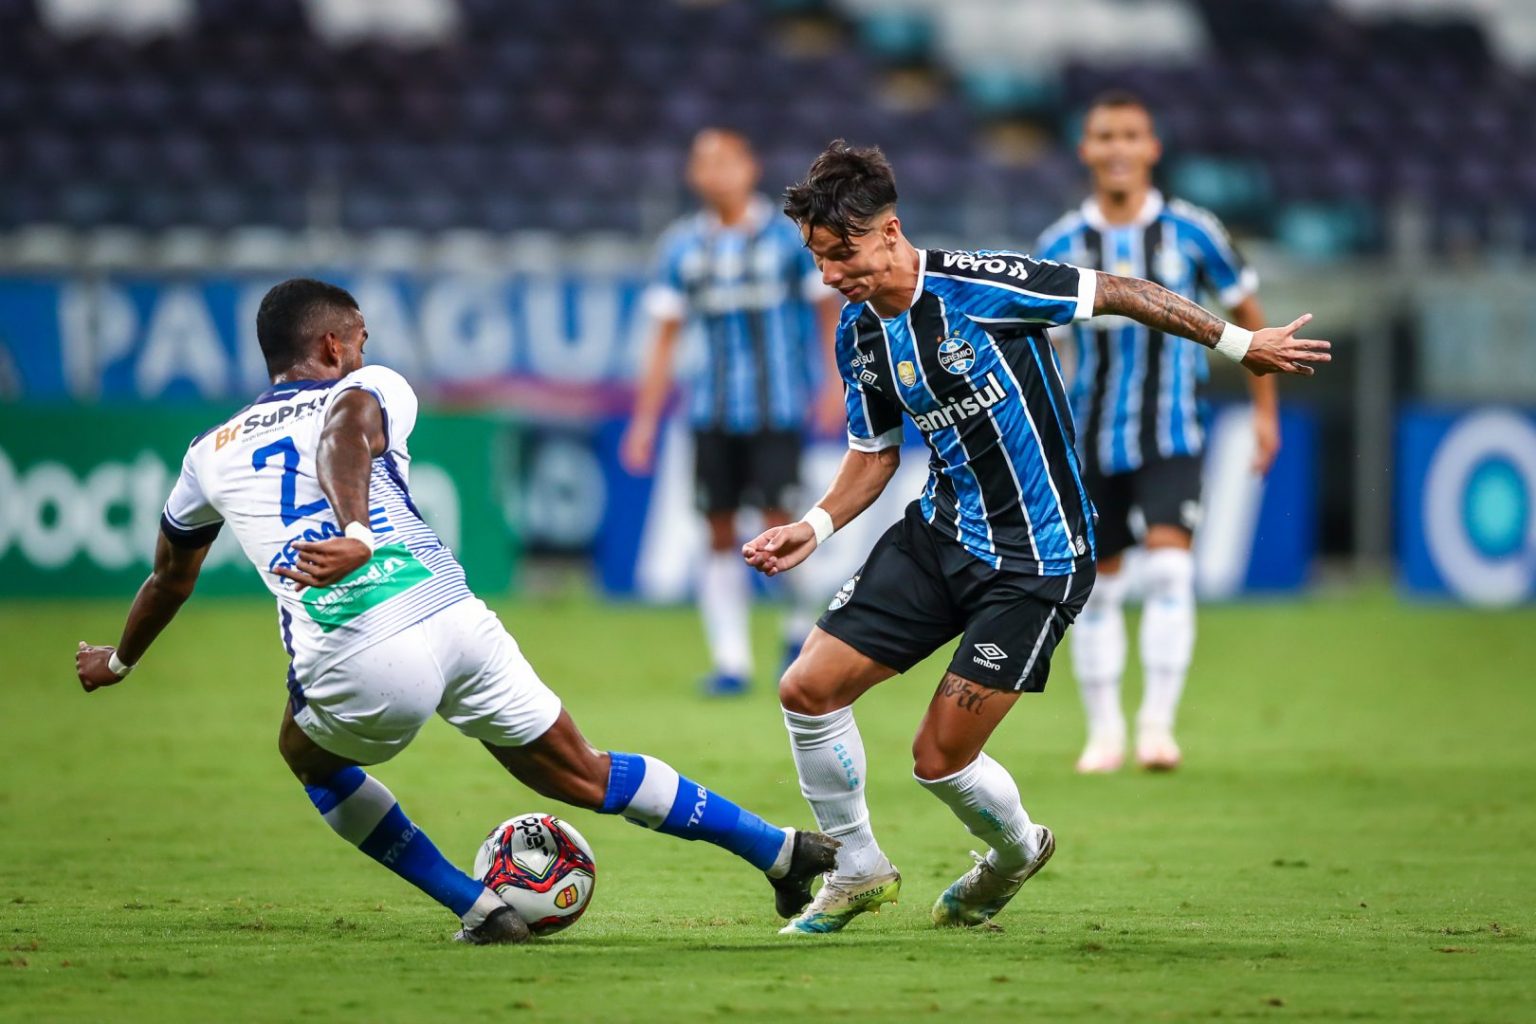 Grêmio vs ABC: A Clash of Competitors